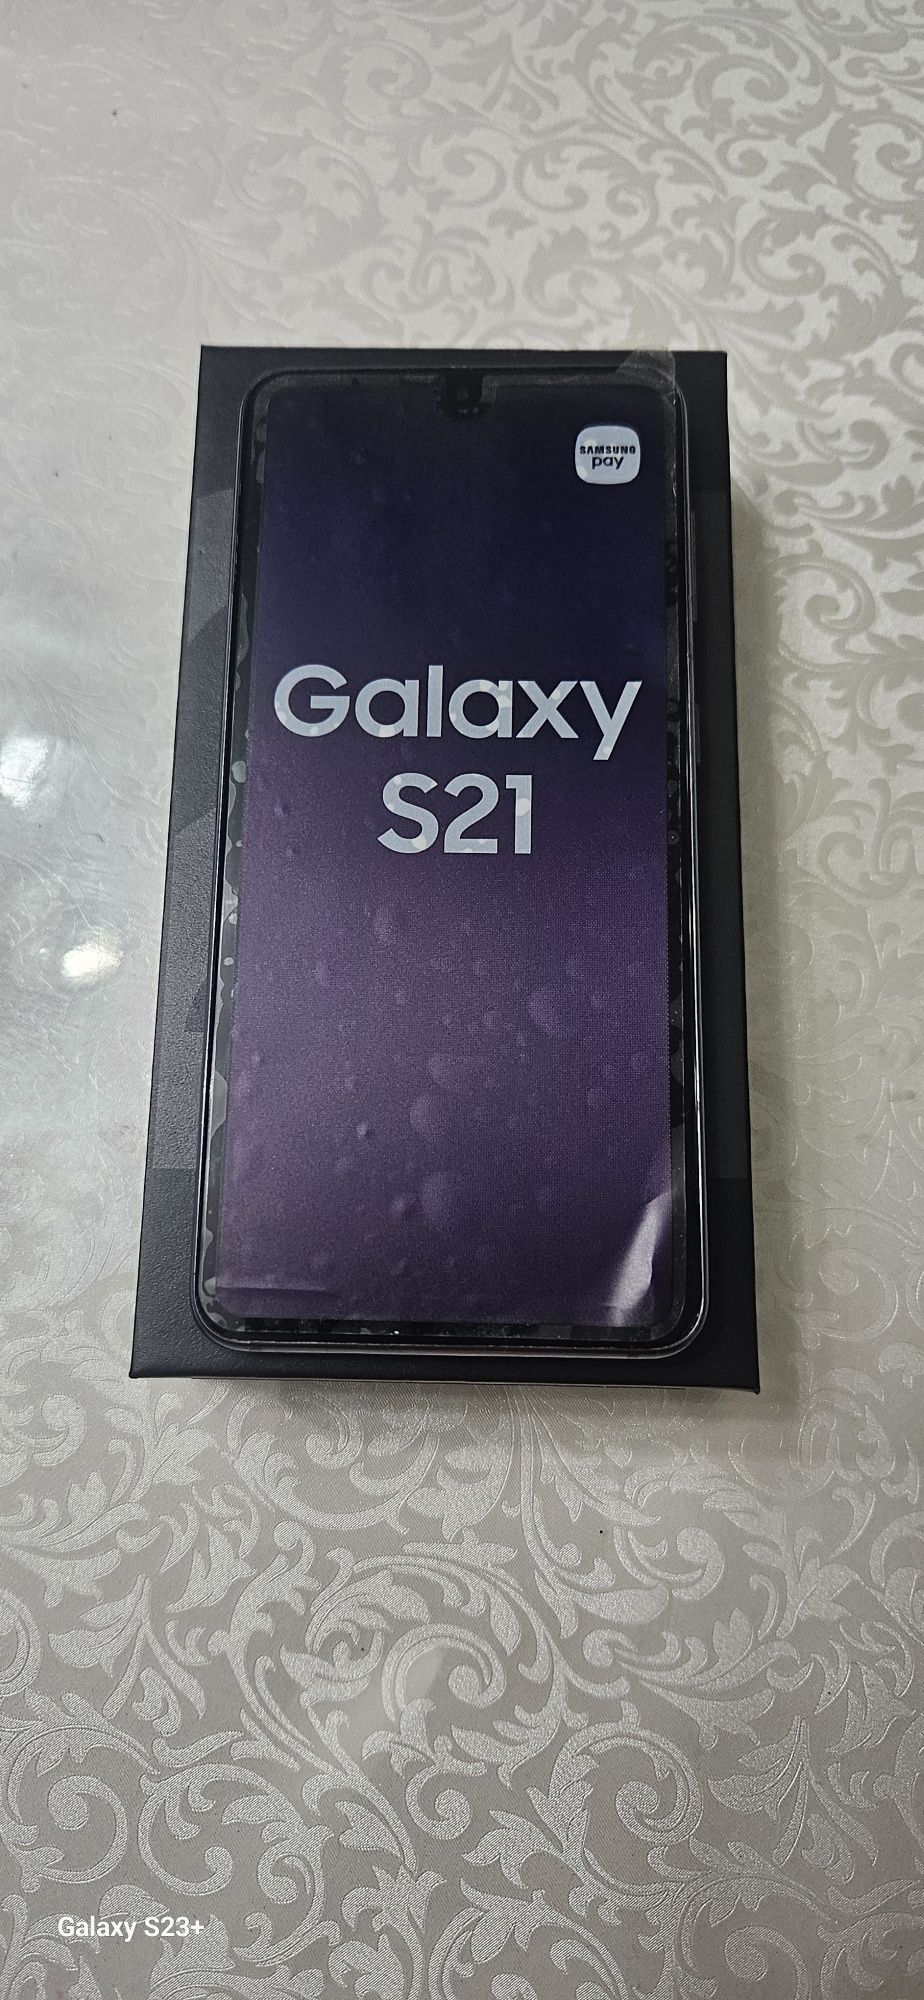 Samsung Galaxy S21 5G 128 GB